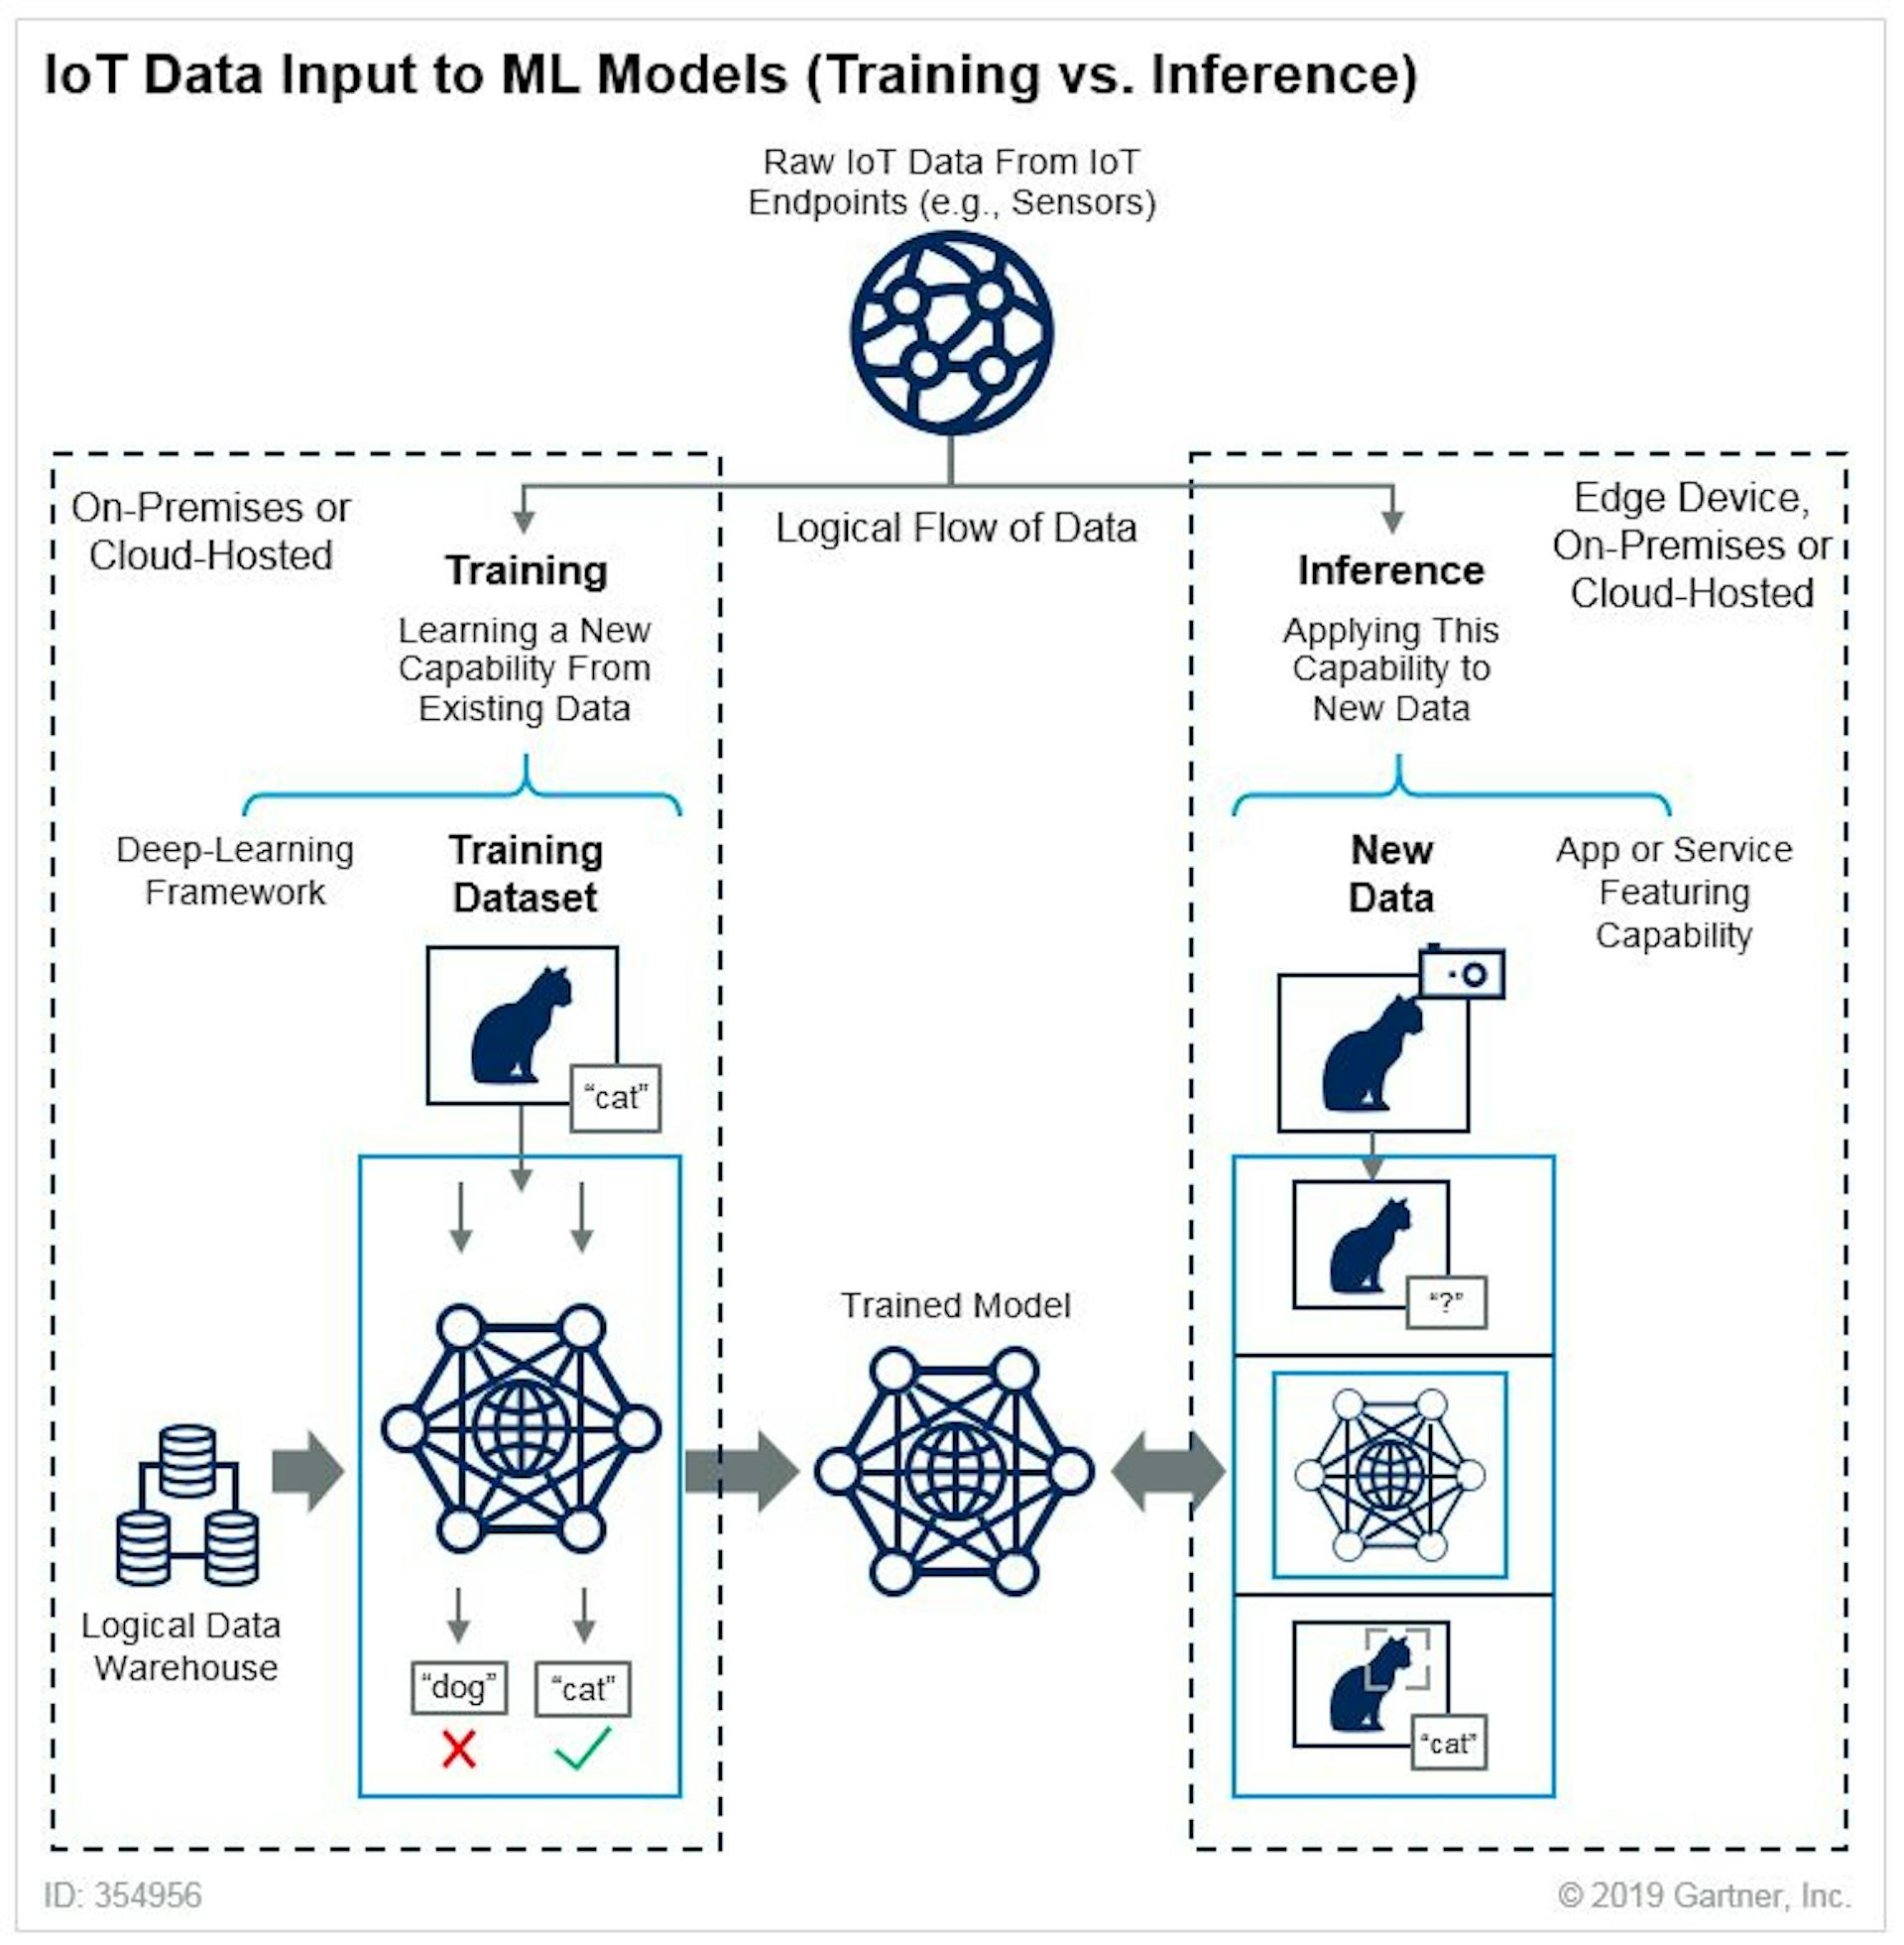 Différence entre les entrées de données de formation et d'inférence dans les modèles ML